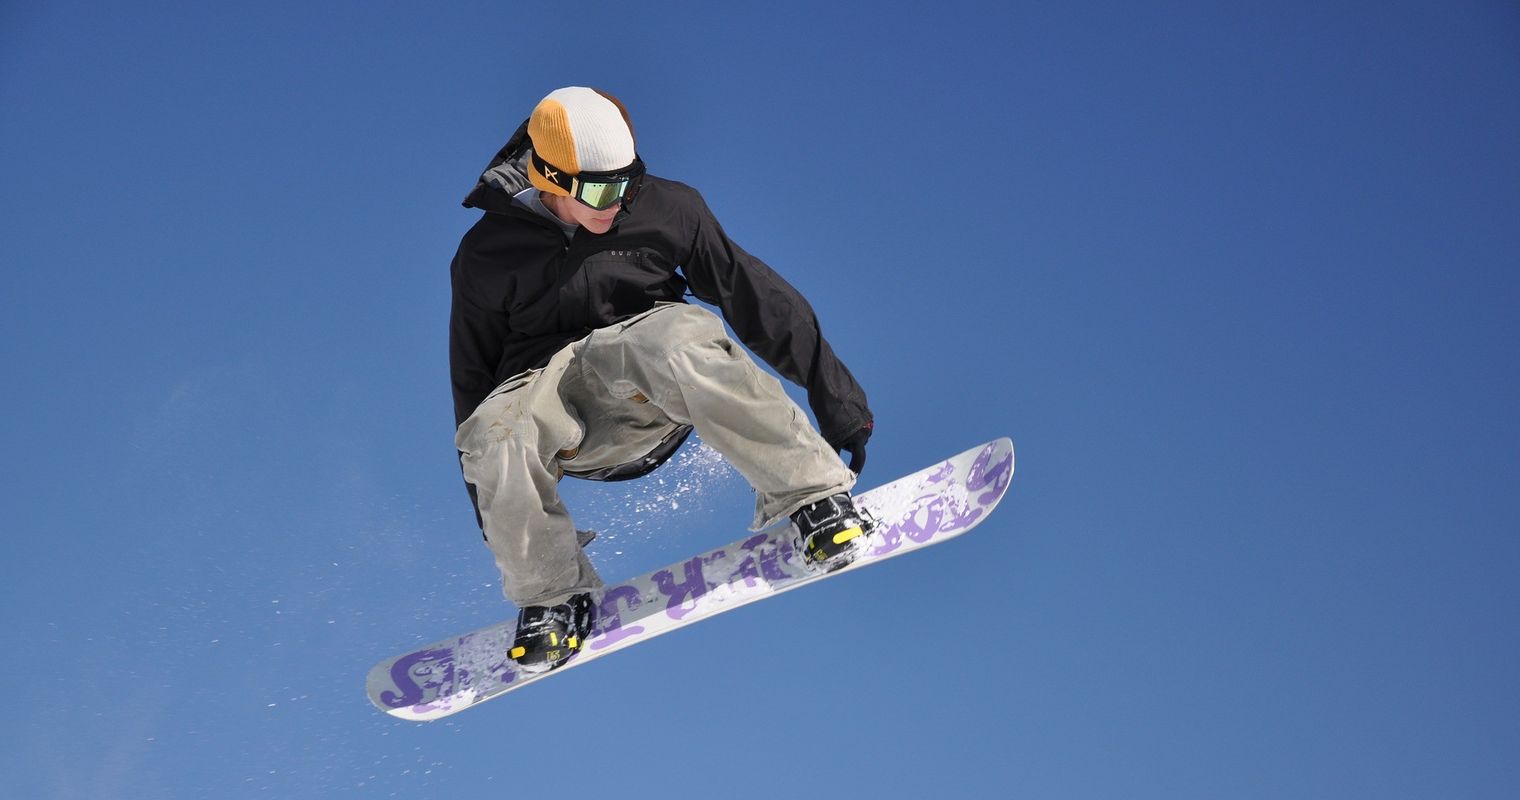 Jeder Snowboarder kann seine eigene Spur hinterlassen